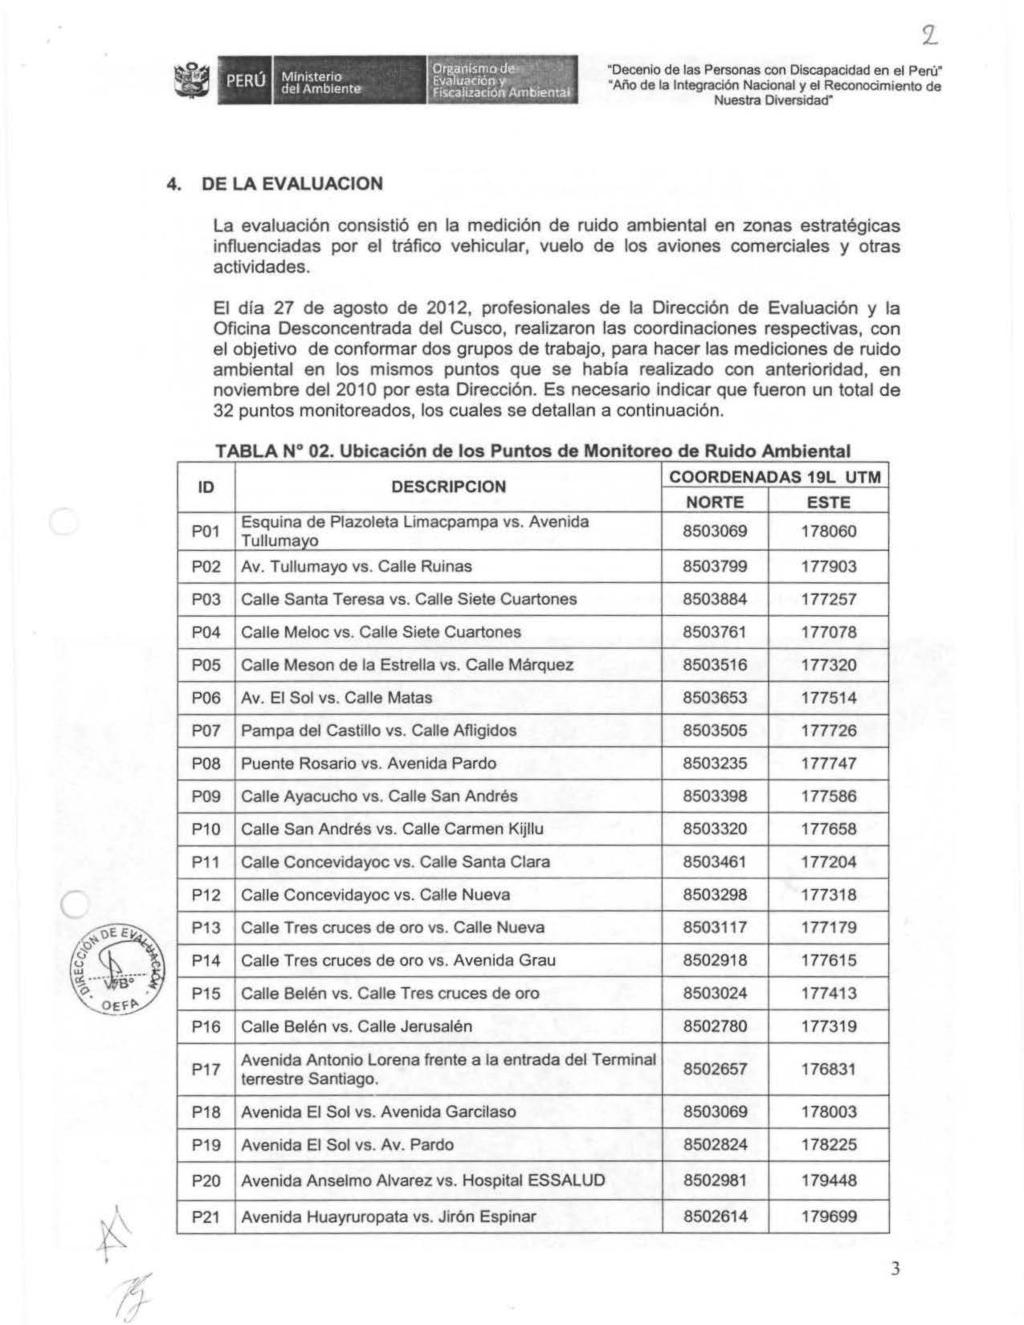 PERU, Mini5terro del Ambiente Or&aoismo d~:, ~.'J. Evaluación 11", ~.